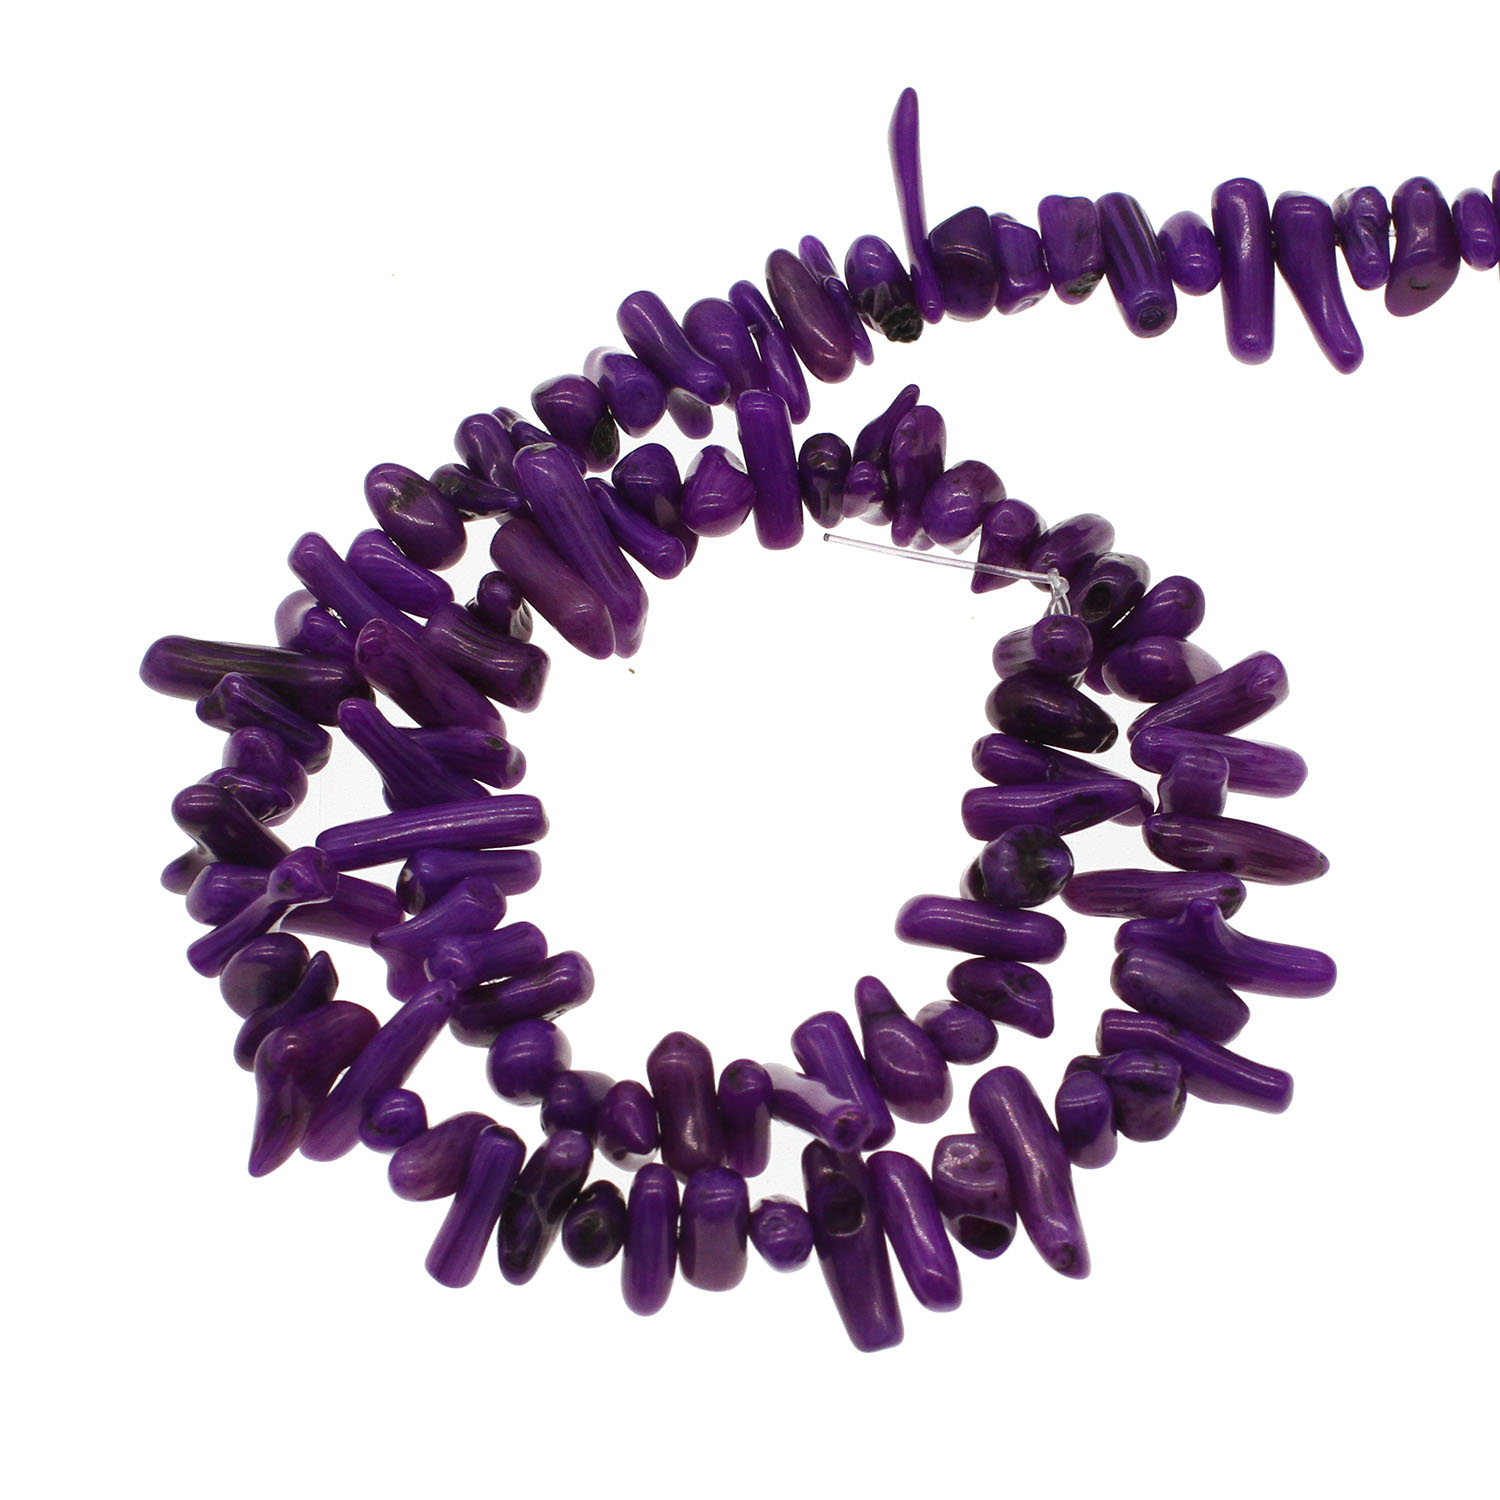 1:violetti